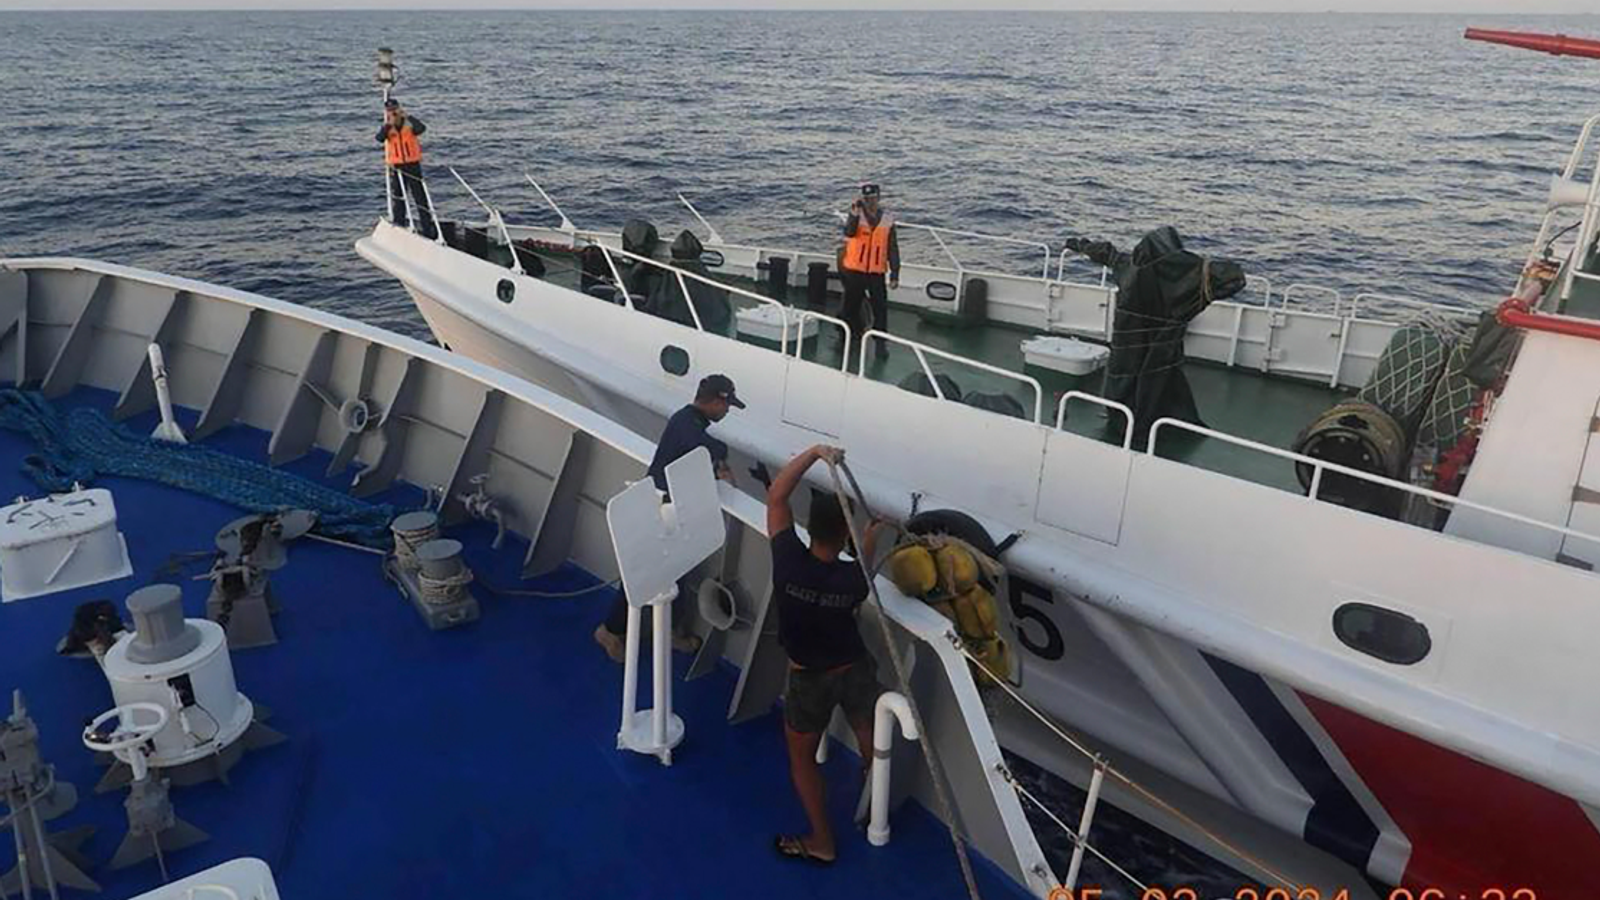 Според филипински служител опасни маневри на кораби са довели до